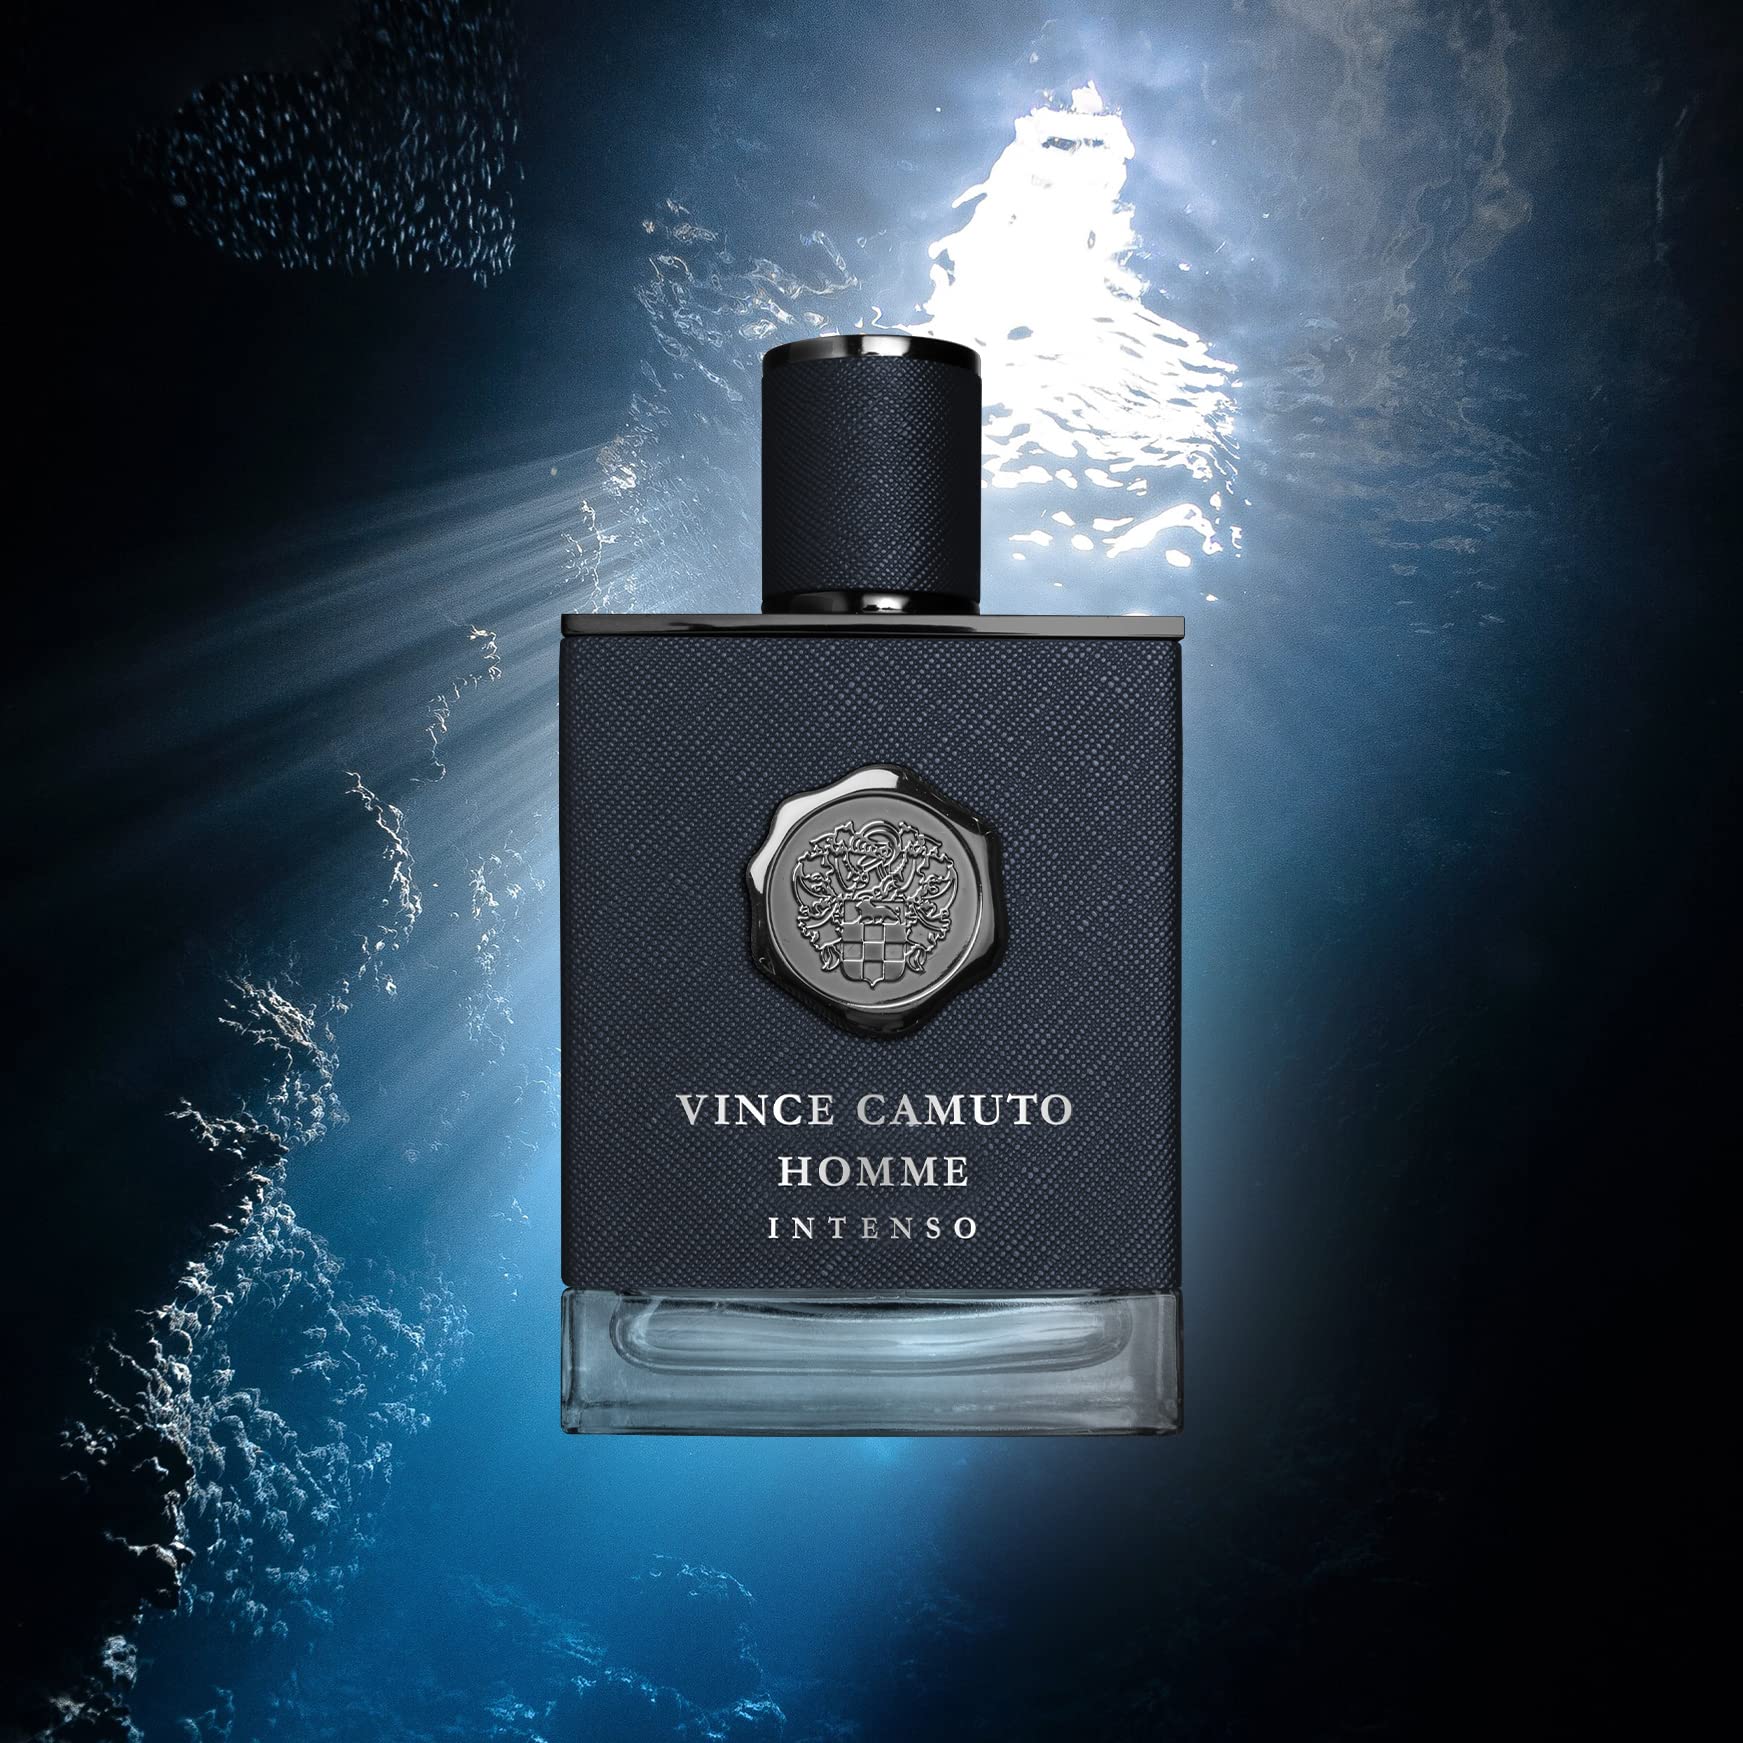 Vince Camuto Homme Intenso Eau De Parfum, 3.4 fl. oz.